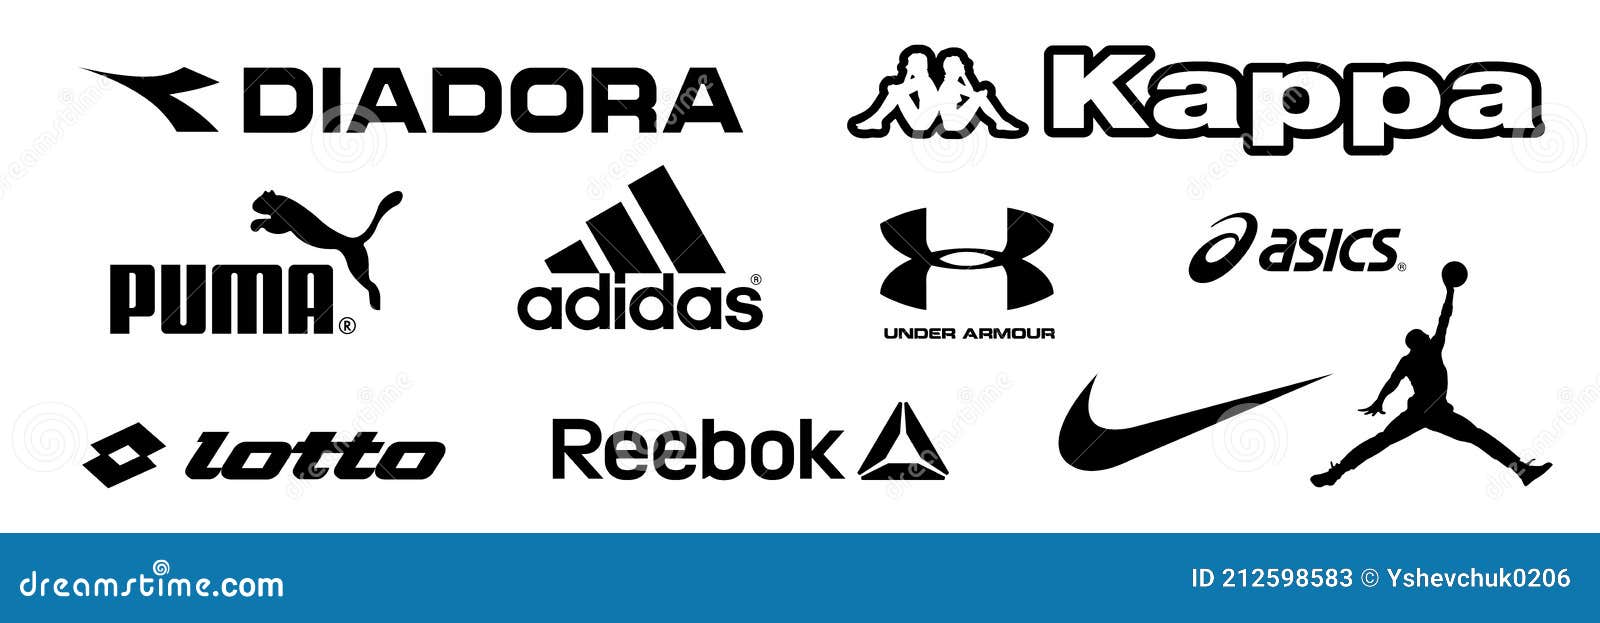 Adidas, Nike, Reebok, Asics, Jordan, Puma, Under Armour, Kappa, Diadora ...